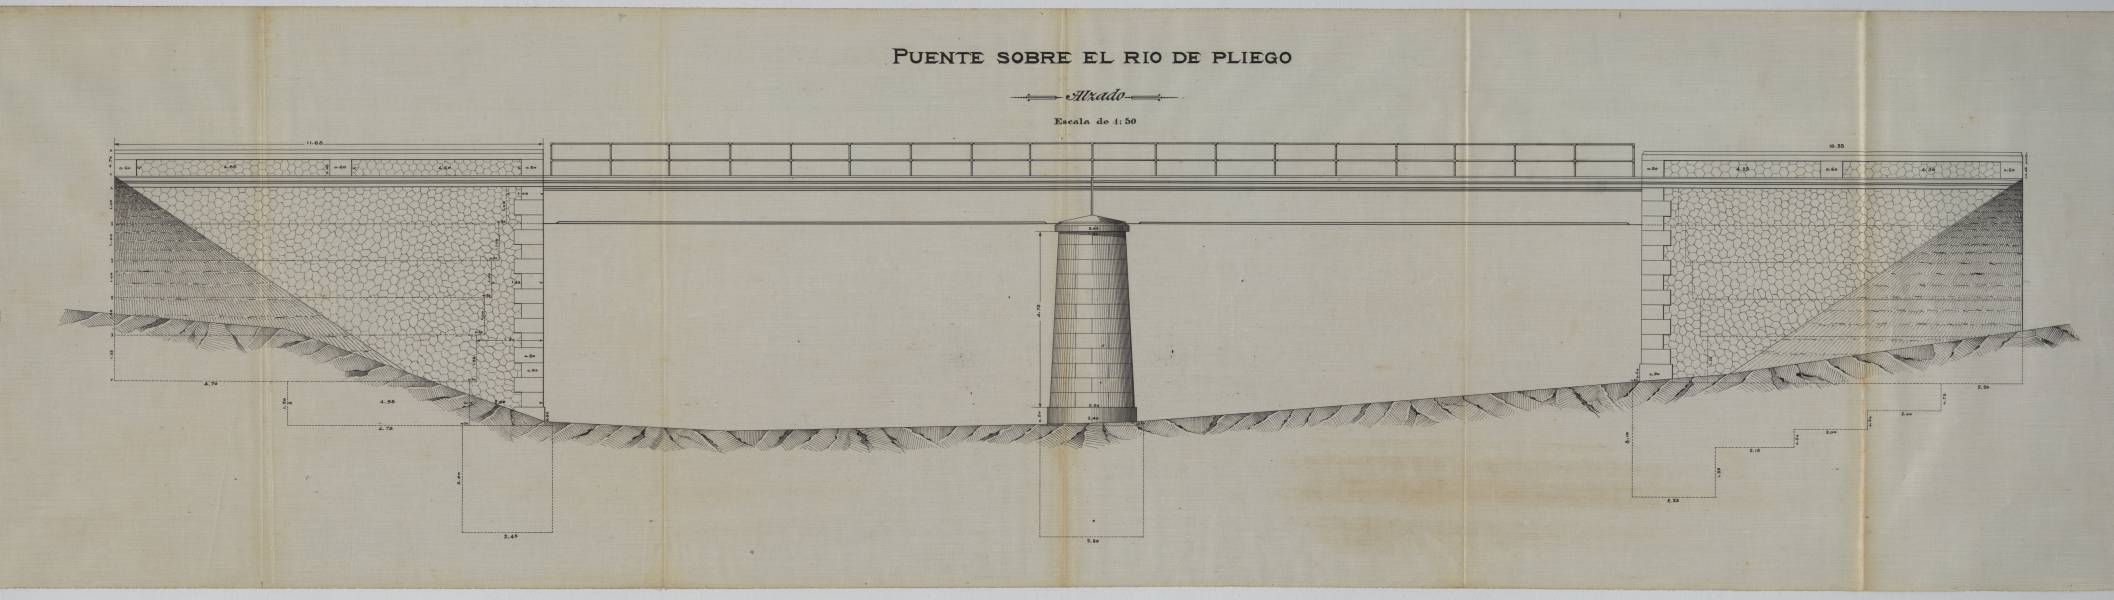 Puente sobre el río de Pliego: alzado / Antonio Bañón Pascual, ingeniero.